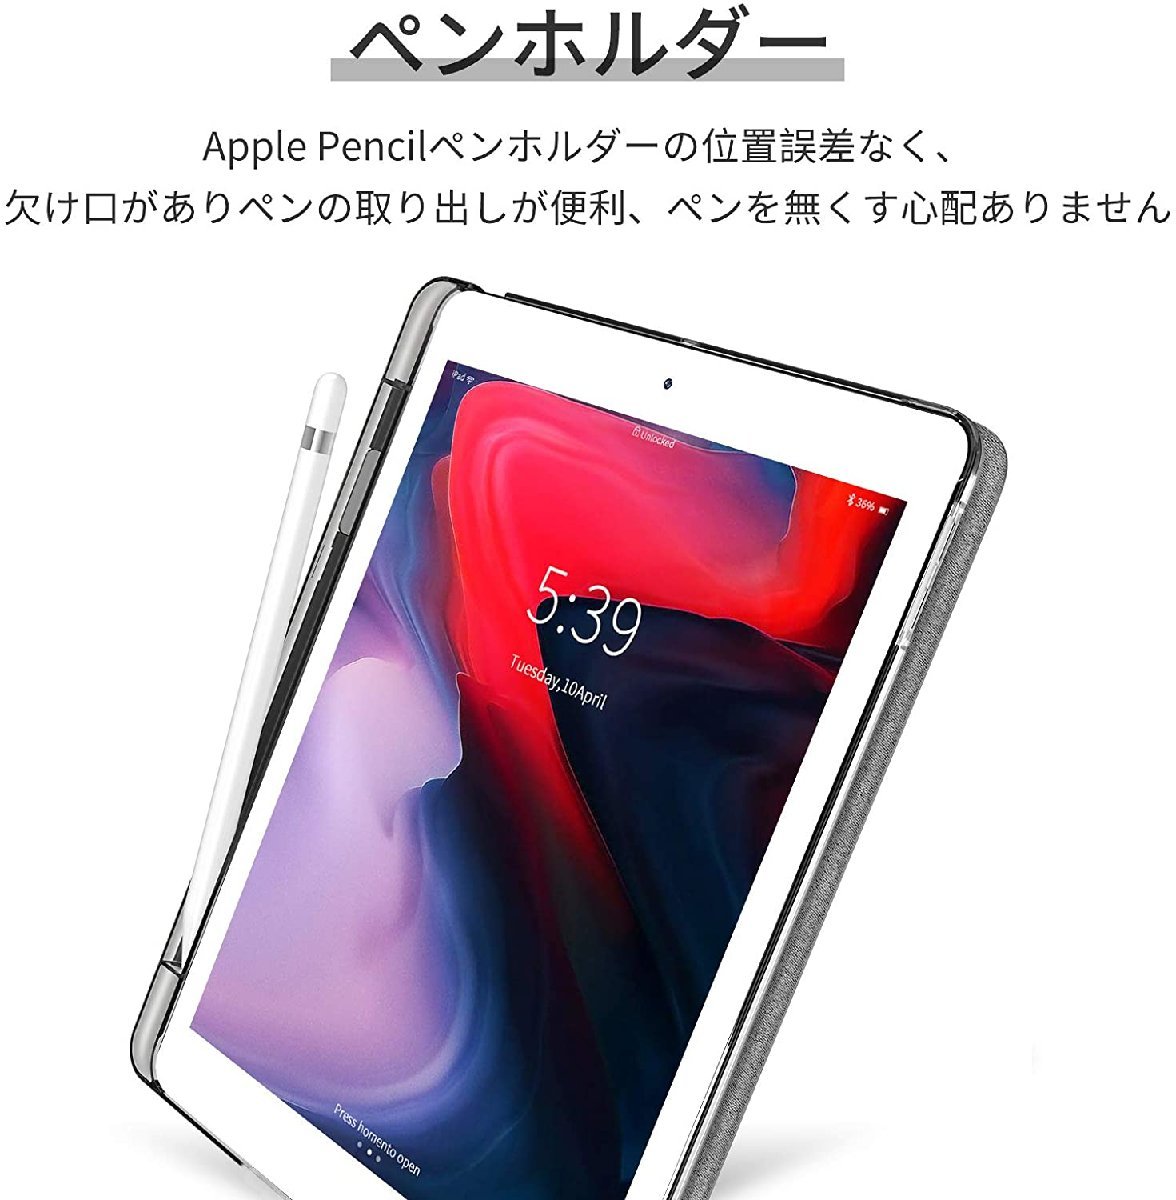 Ipad Air4 ケース ペンシル収納付き3つ折り 黒い Apple